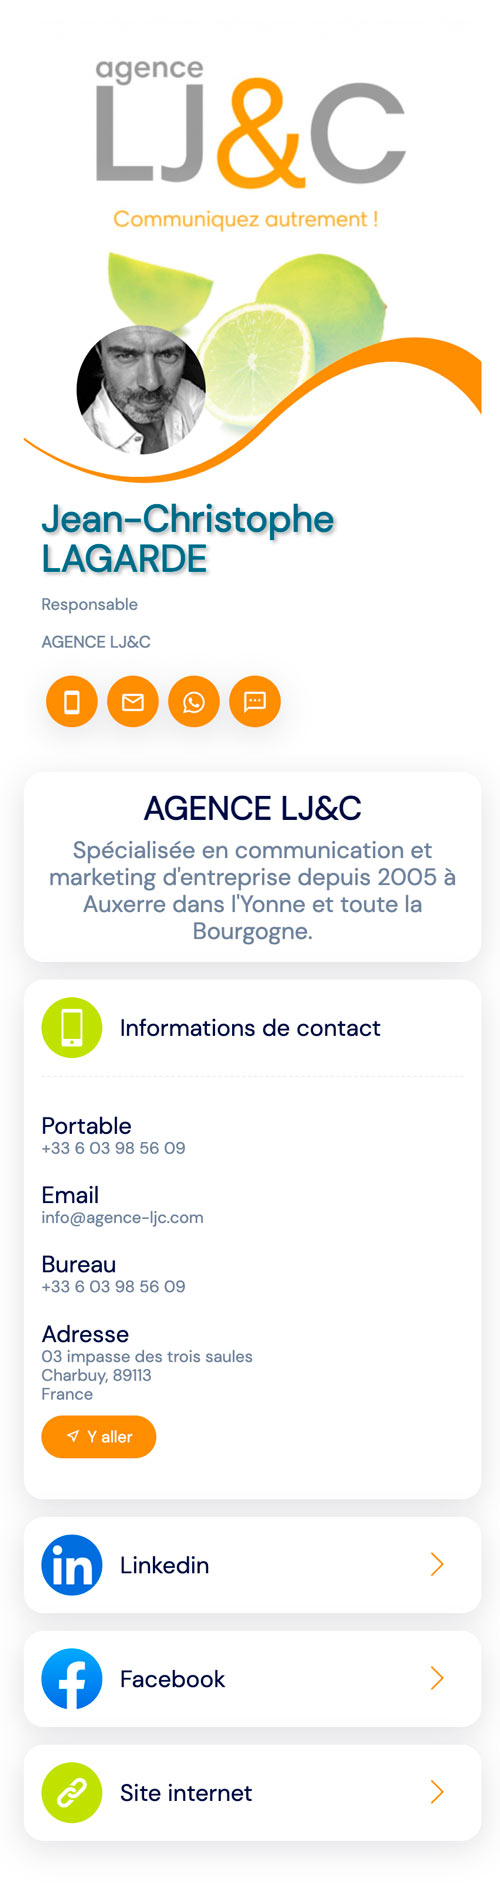 Détails de la carte de visite numérique de l'Agence de communication LJ&C à Auxerre - Yonne en Bourgogne.